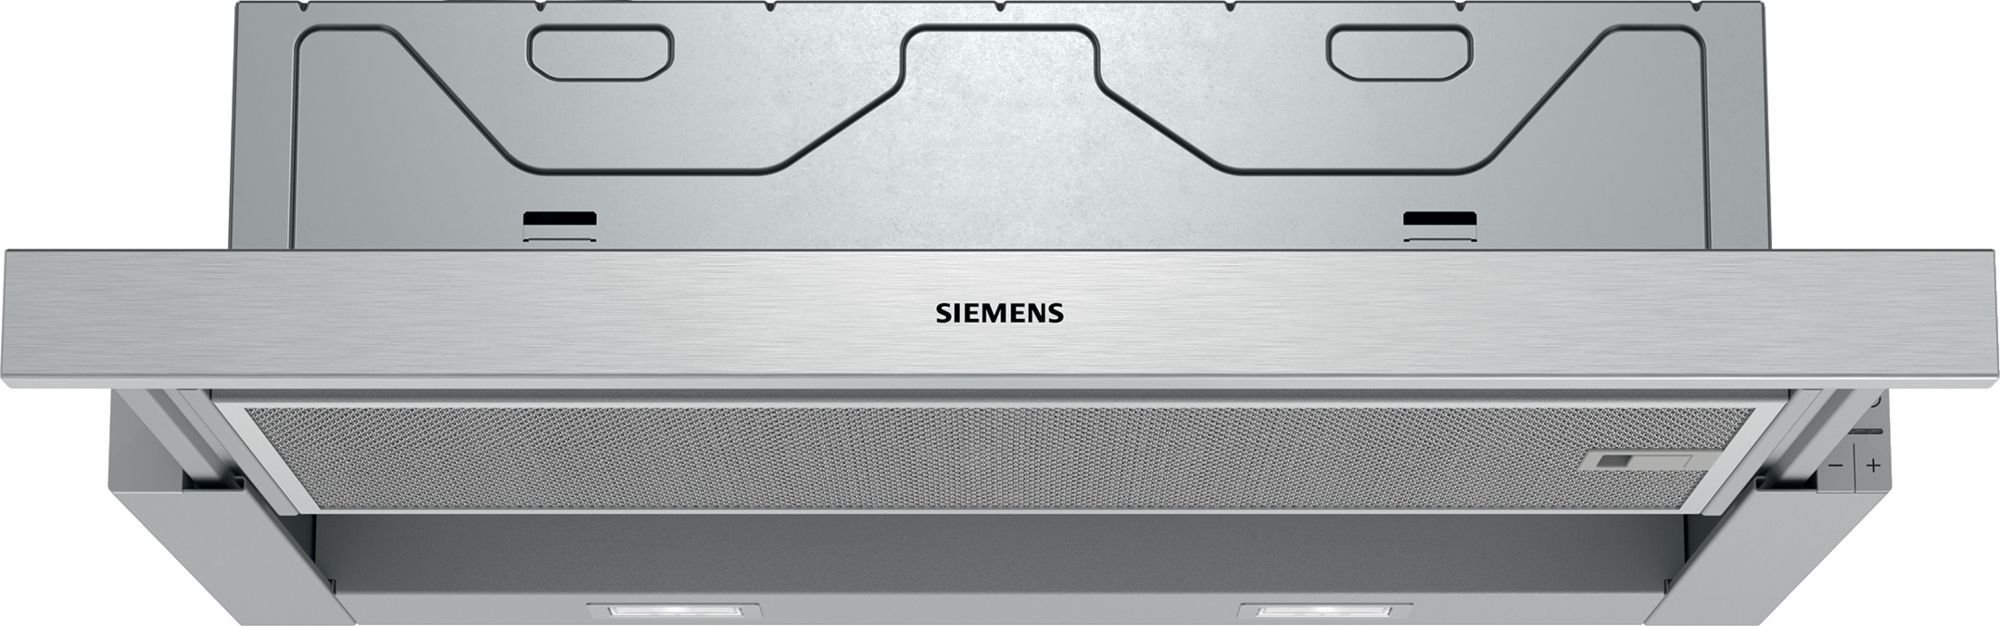 Hote - Hota Siemens LI64MA531